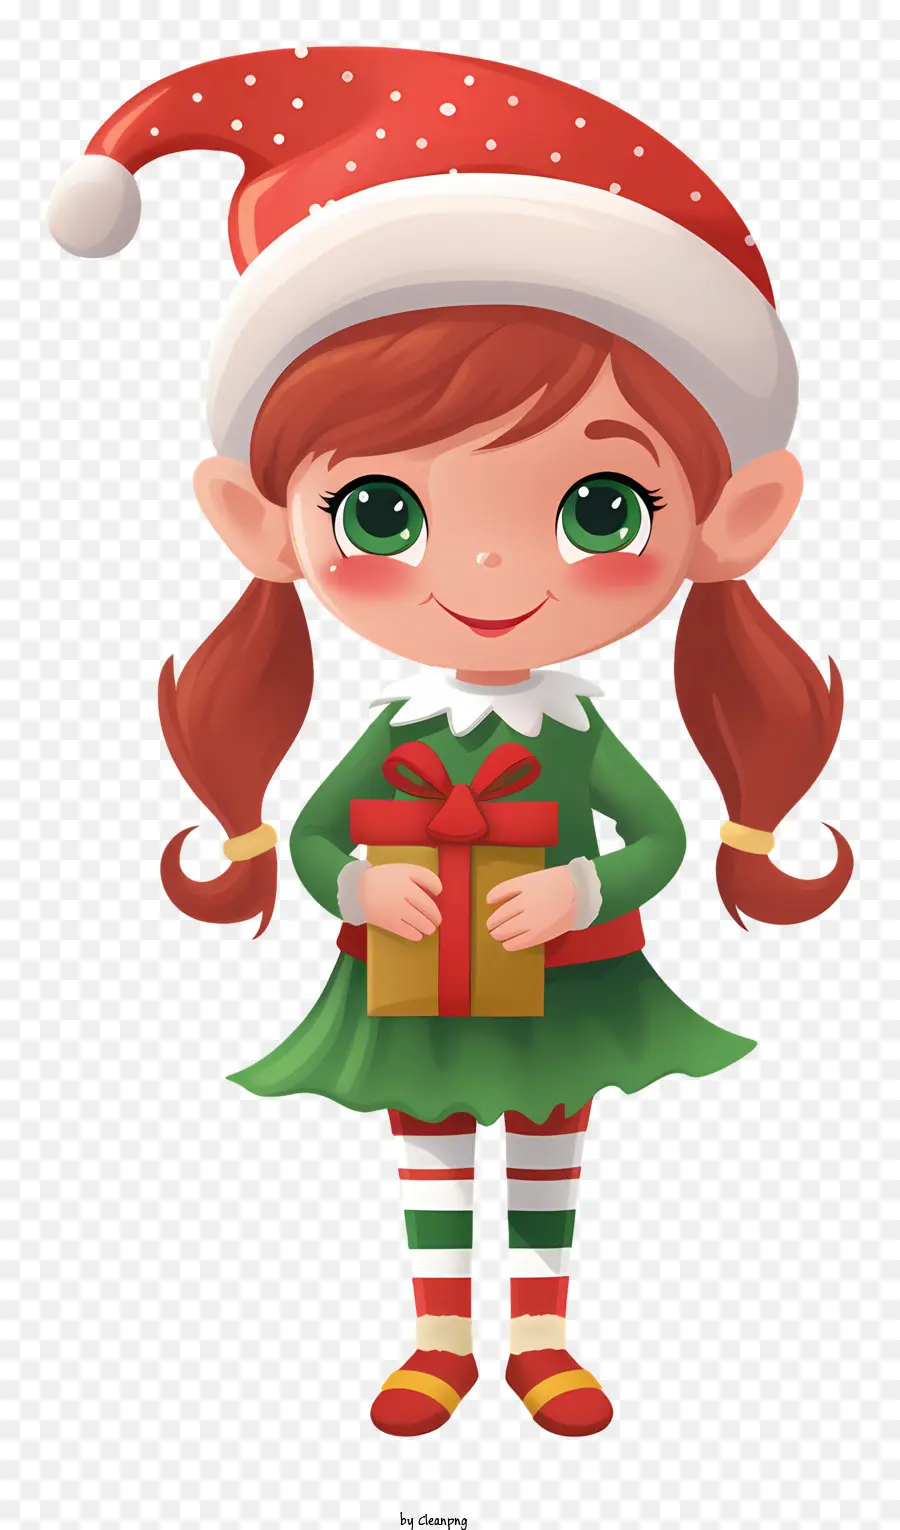 scatola regalo - Girl Smiling Girl Holding Gift Box, adatto alla pubblicazione per bambini